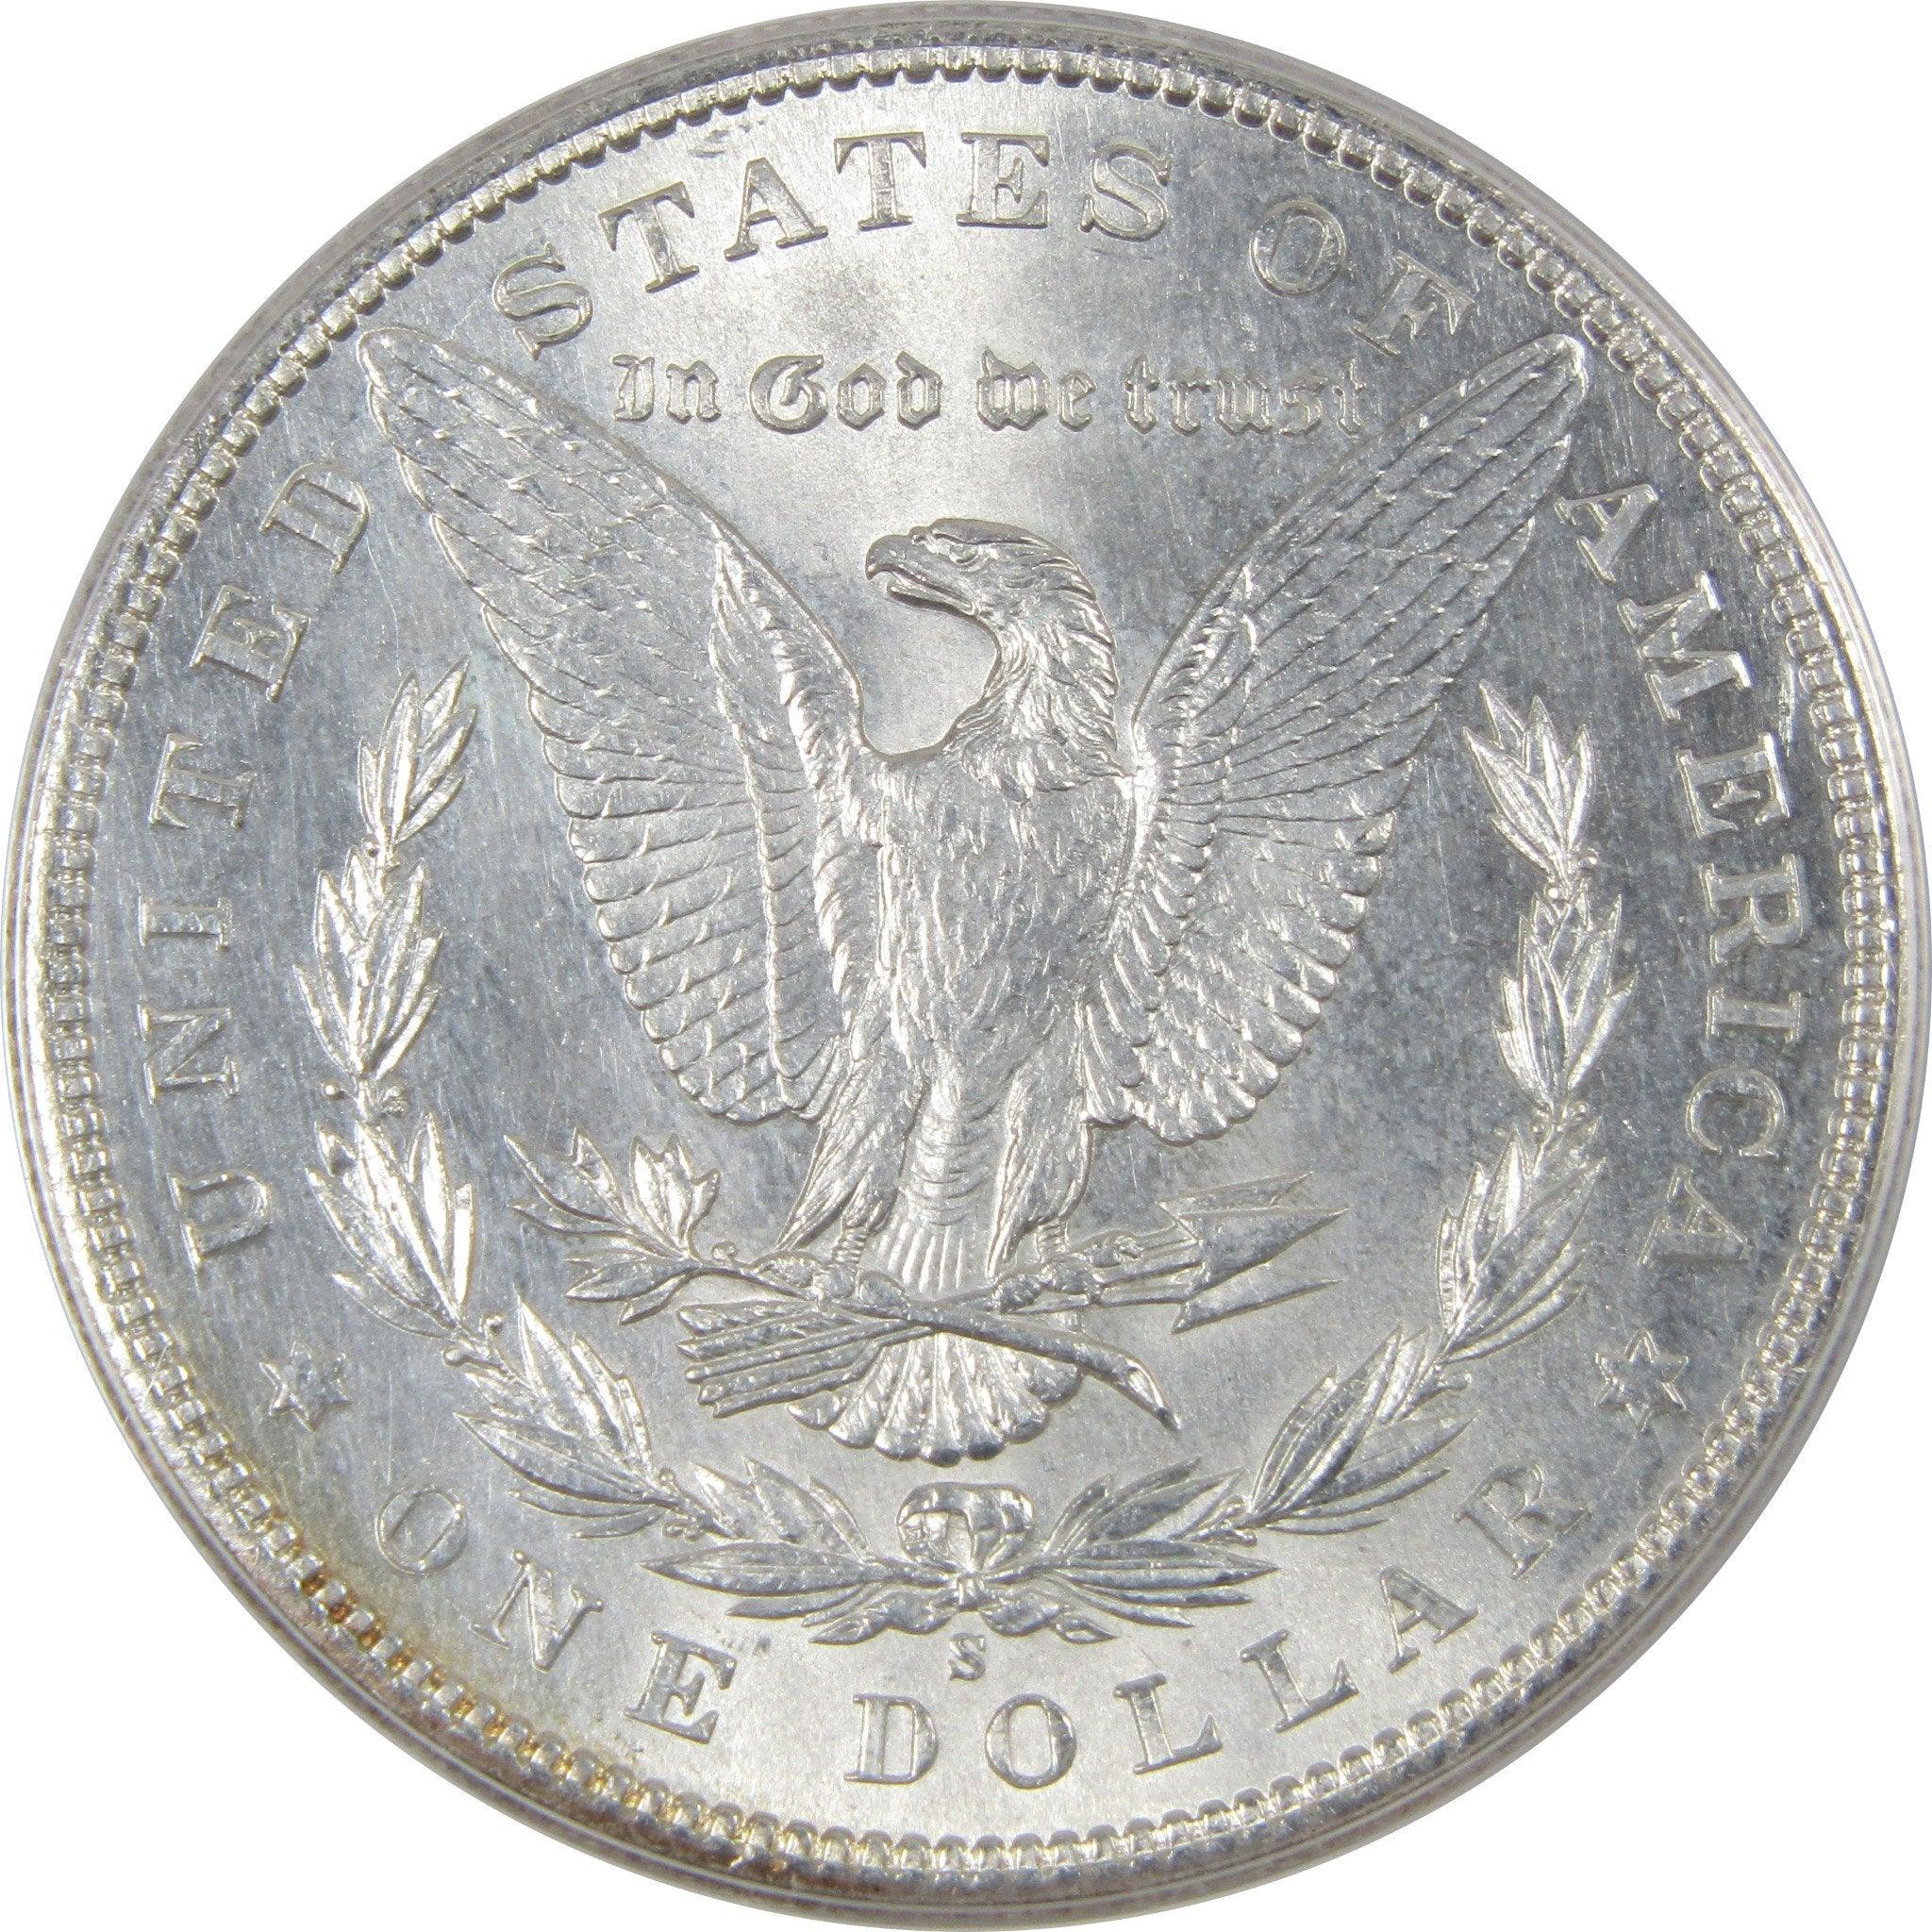 1899 $5 Gold Liberty Half Eagle NGC MS 63 - Free Shipping USA